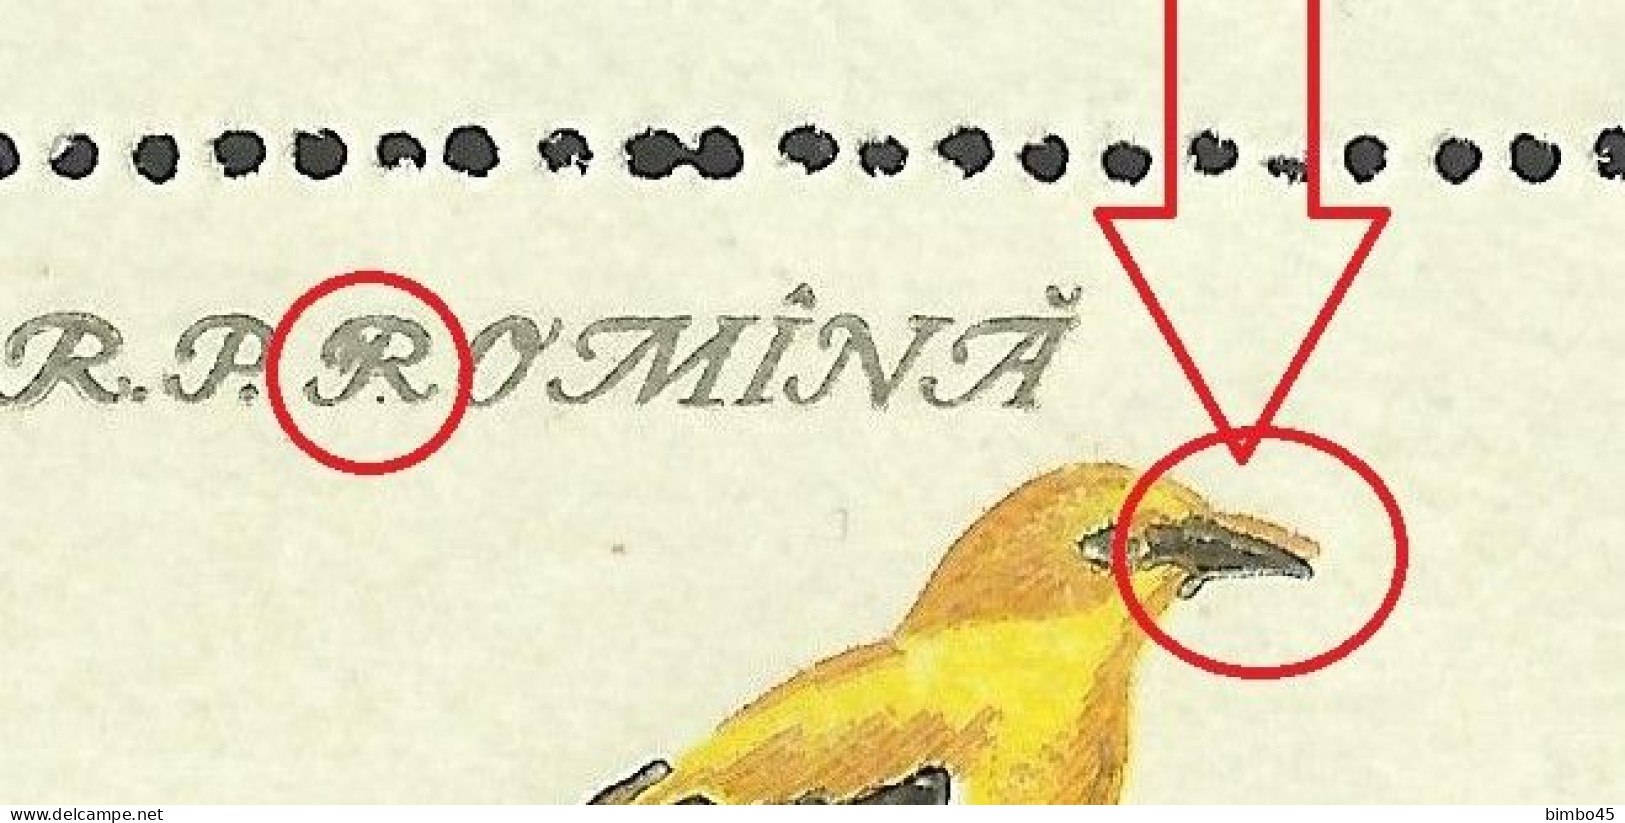 Error - Rar , Rar ,  - Romania  Airmail  1959 Bird X4 MNH -  Double Beak In Birds / Letter "R" - Errors, Freaks & Oddities (EFO)